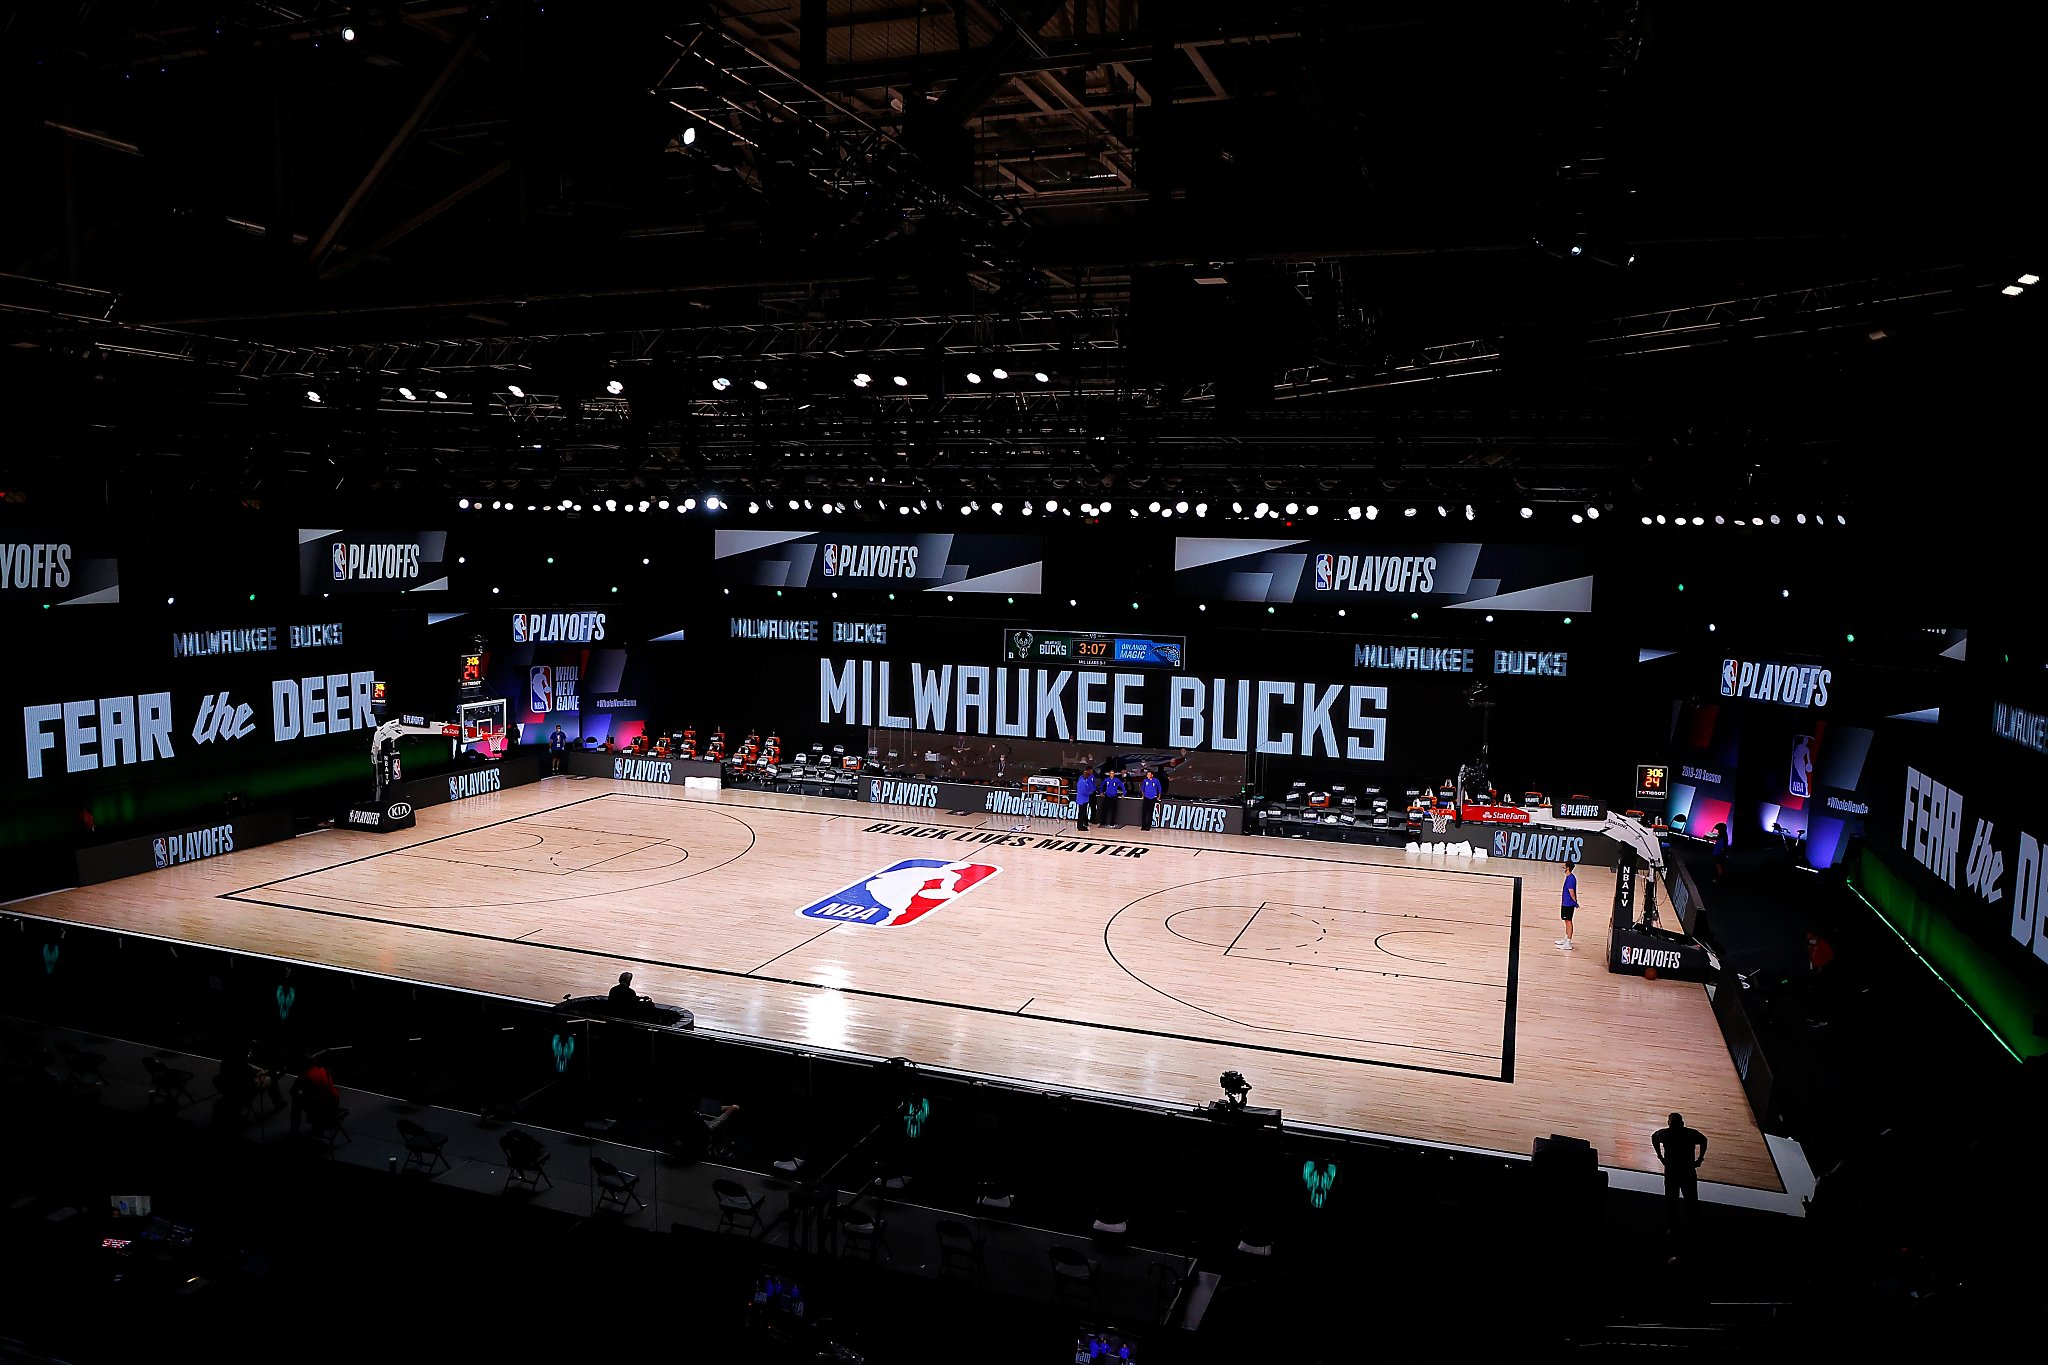 Bigger than basketball: Milwaukee Bucks go on strike over Jacob Blake  shooting - SFChronicle.com